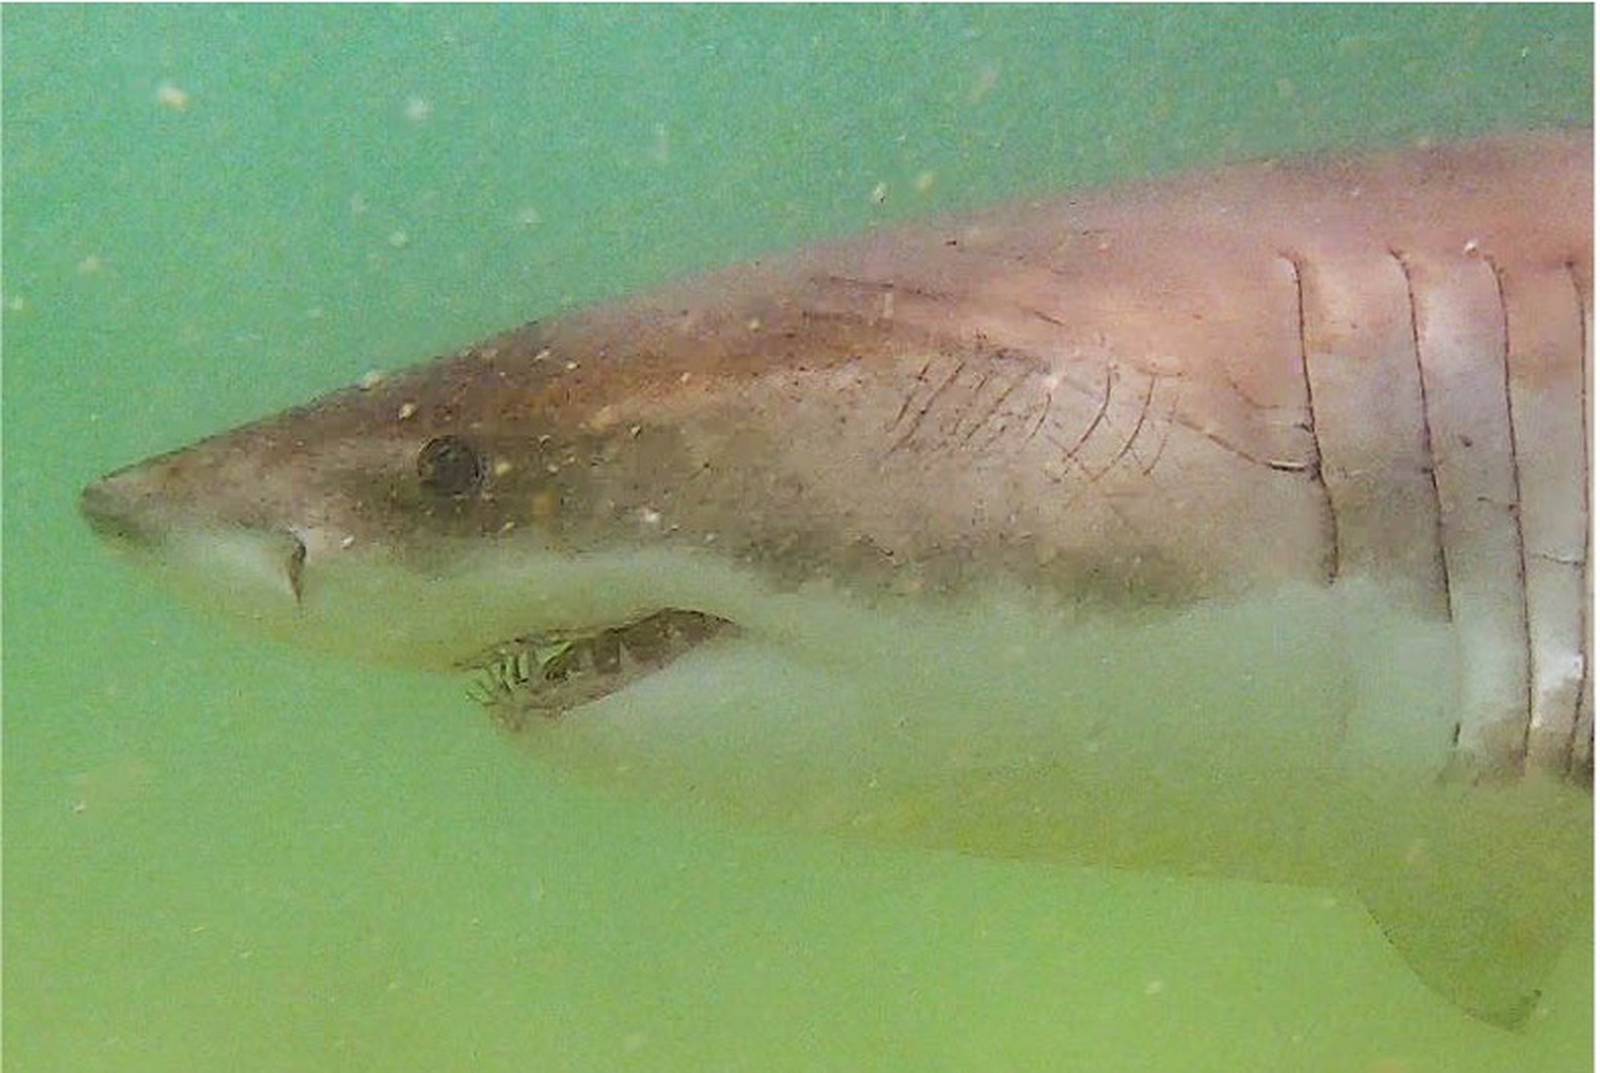 Great white sightings off Cape Cod skyrocket as peak shark season